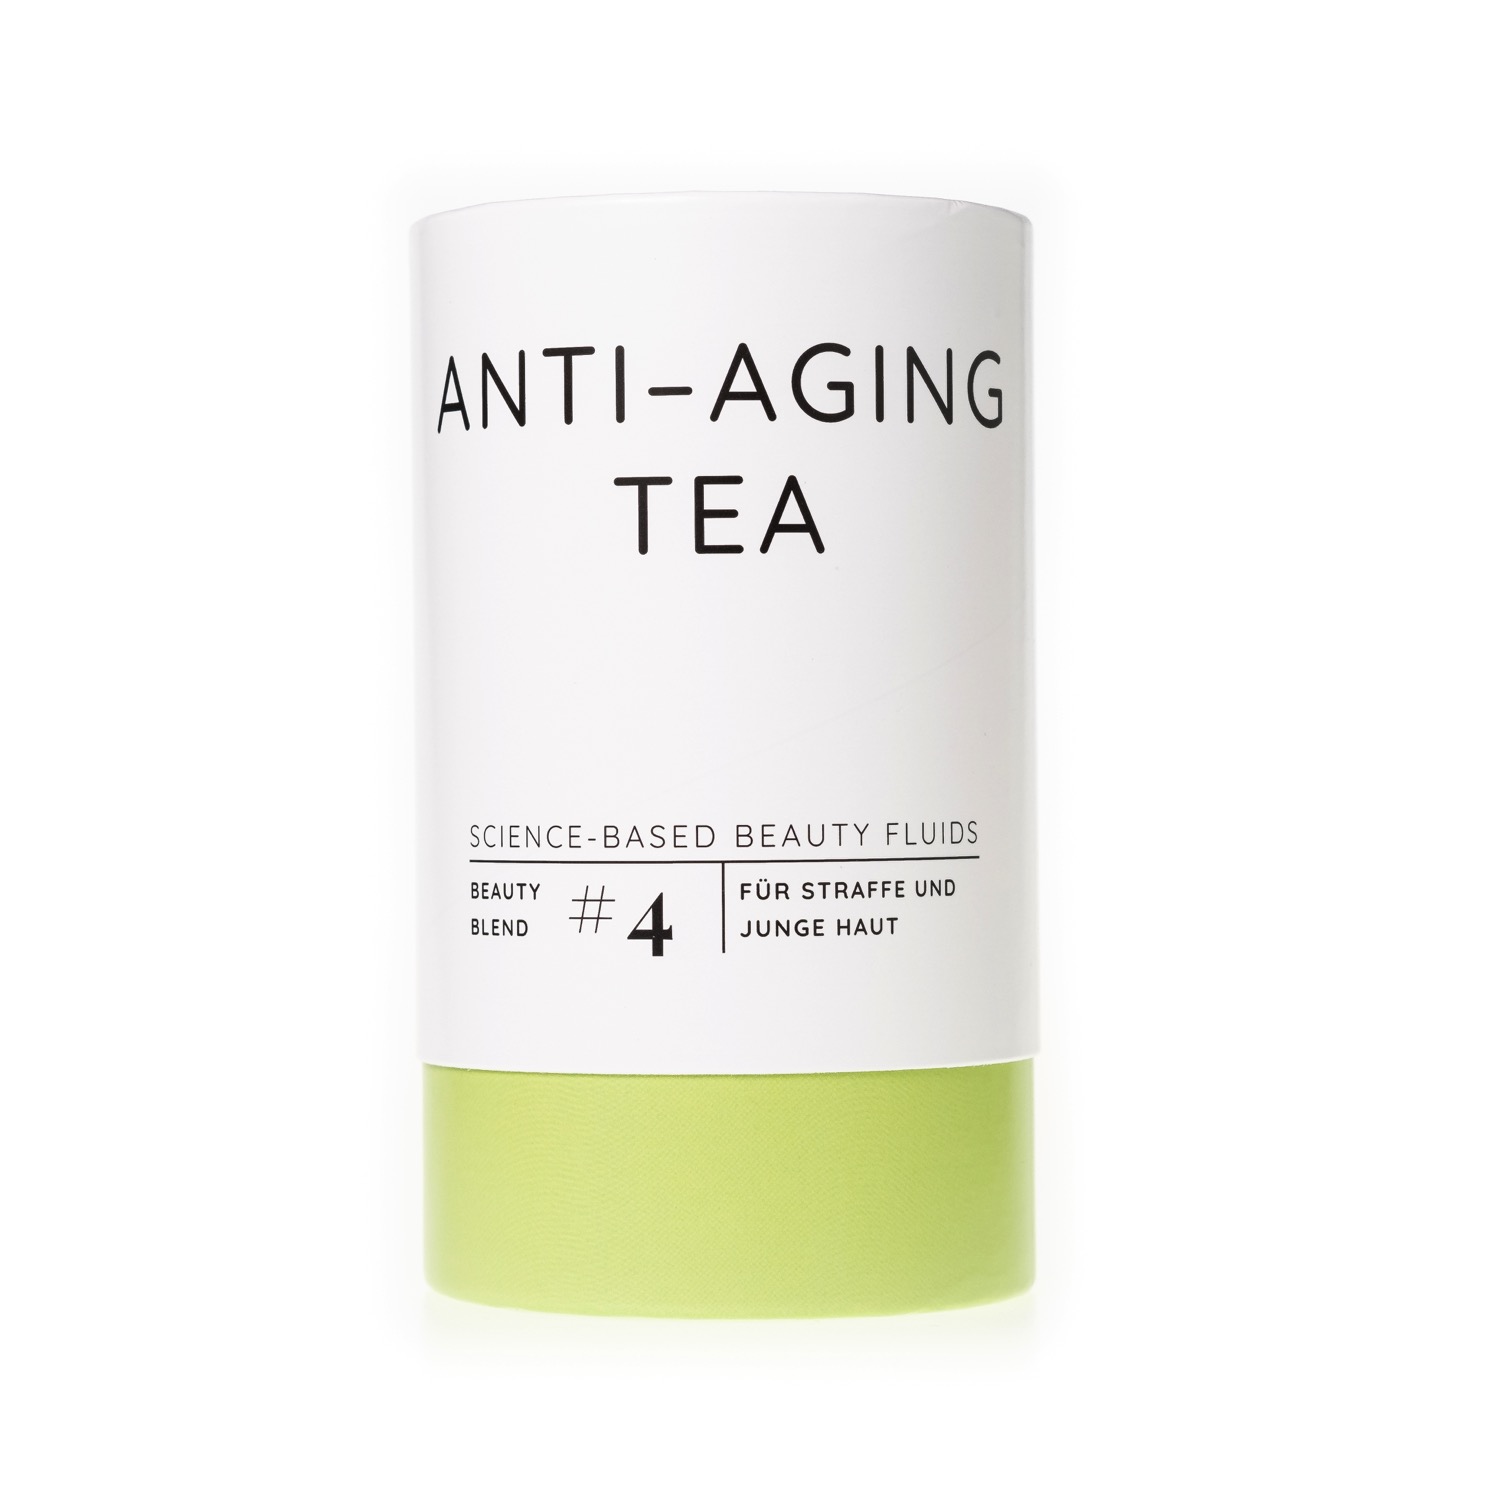 Anti-Aging Tea